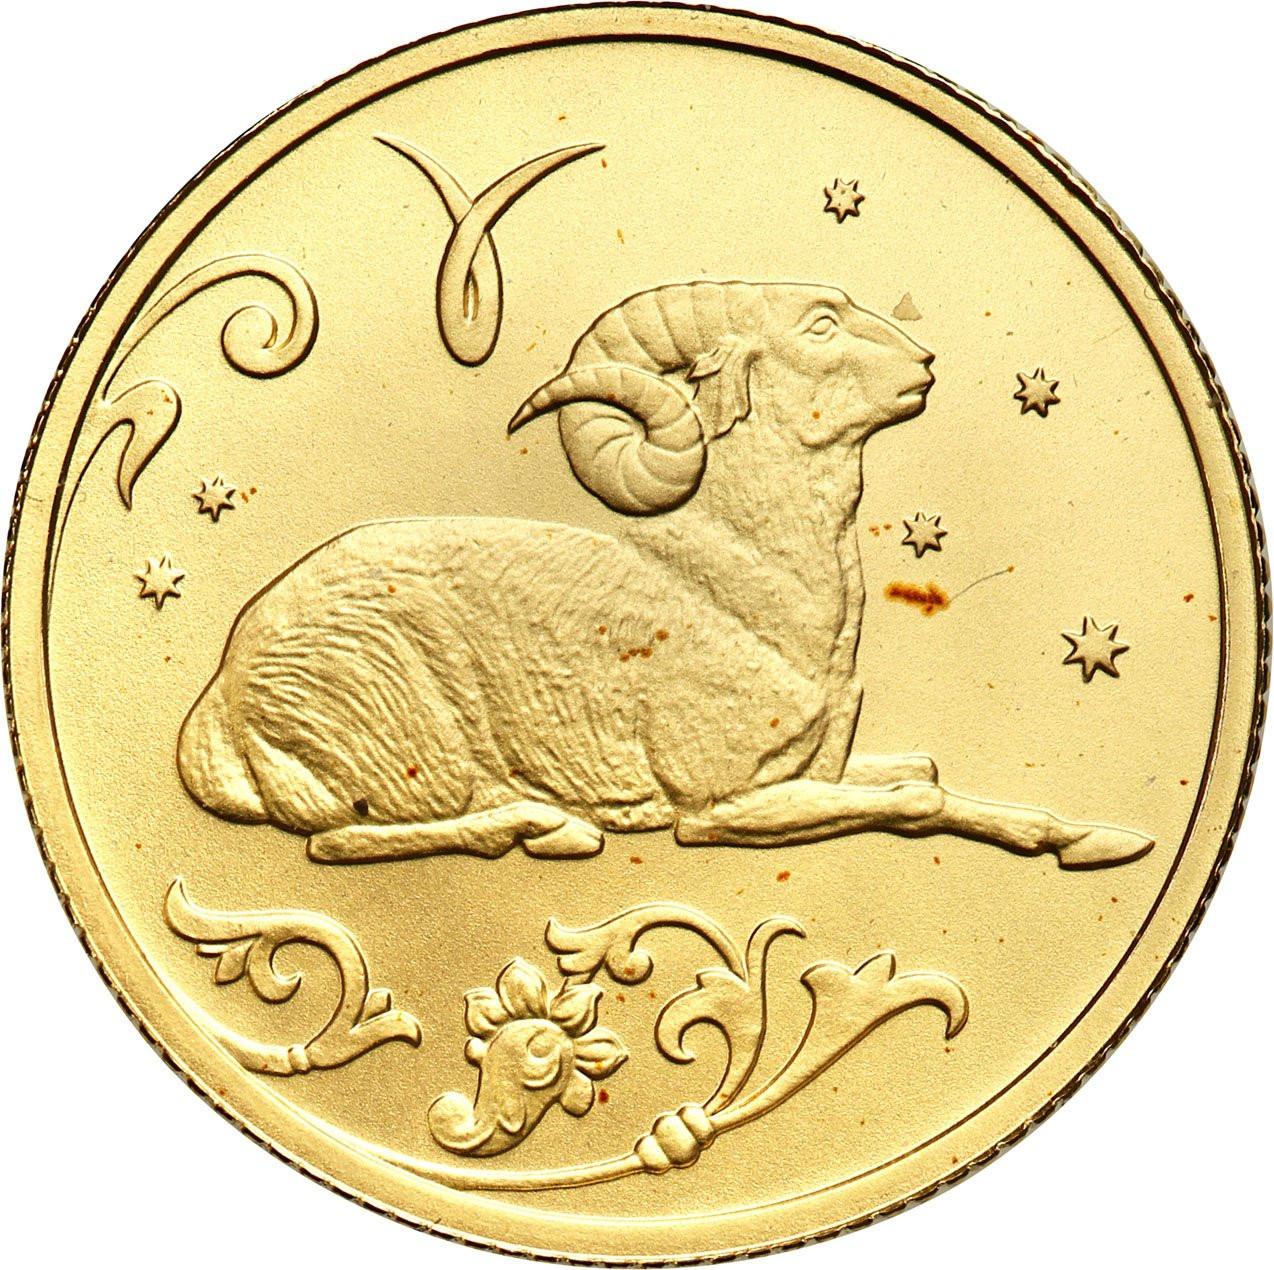 Rosja. 25 Rubli 2005 Baran - 1/10 uncji złota